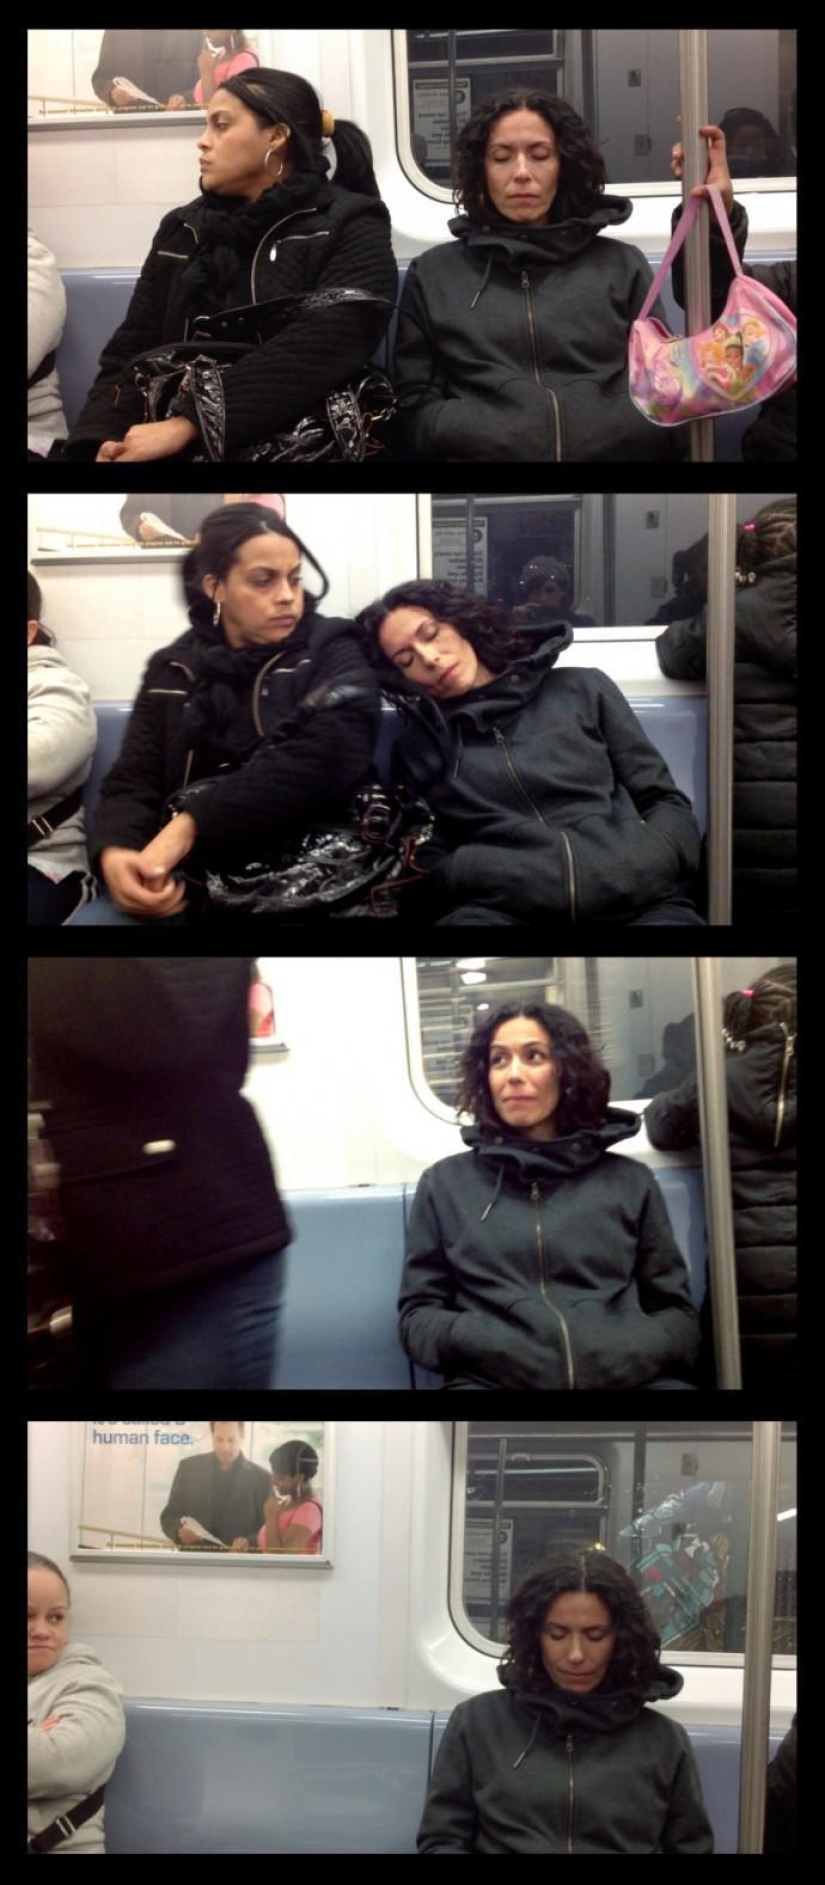 Curiosas fotos de pasajeros "dormidos" en el metro